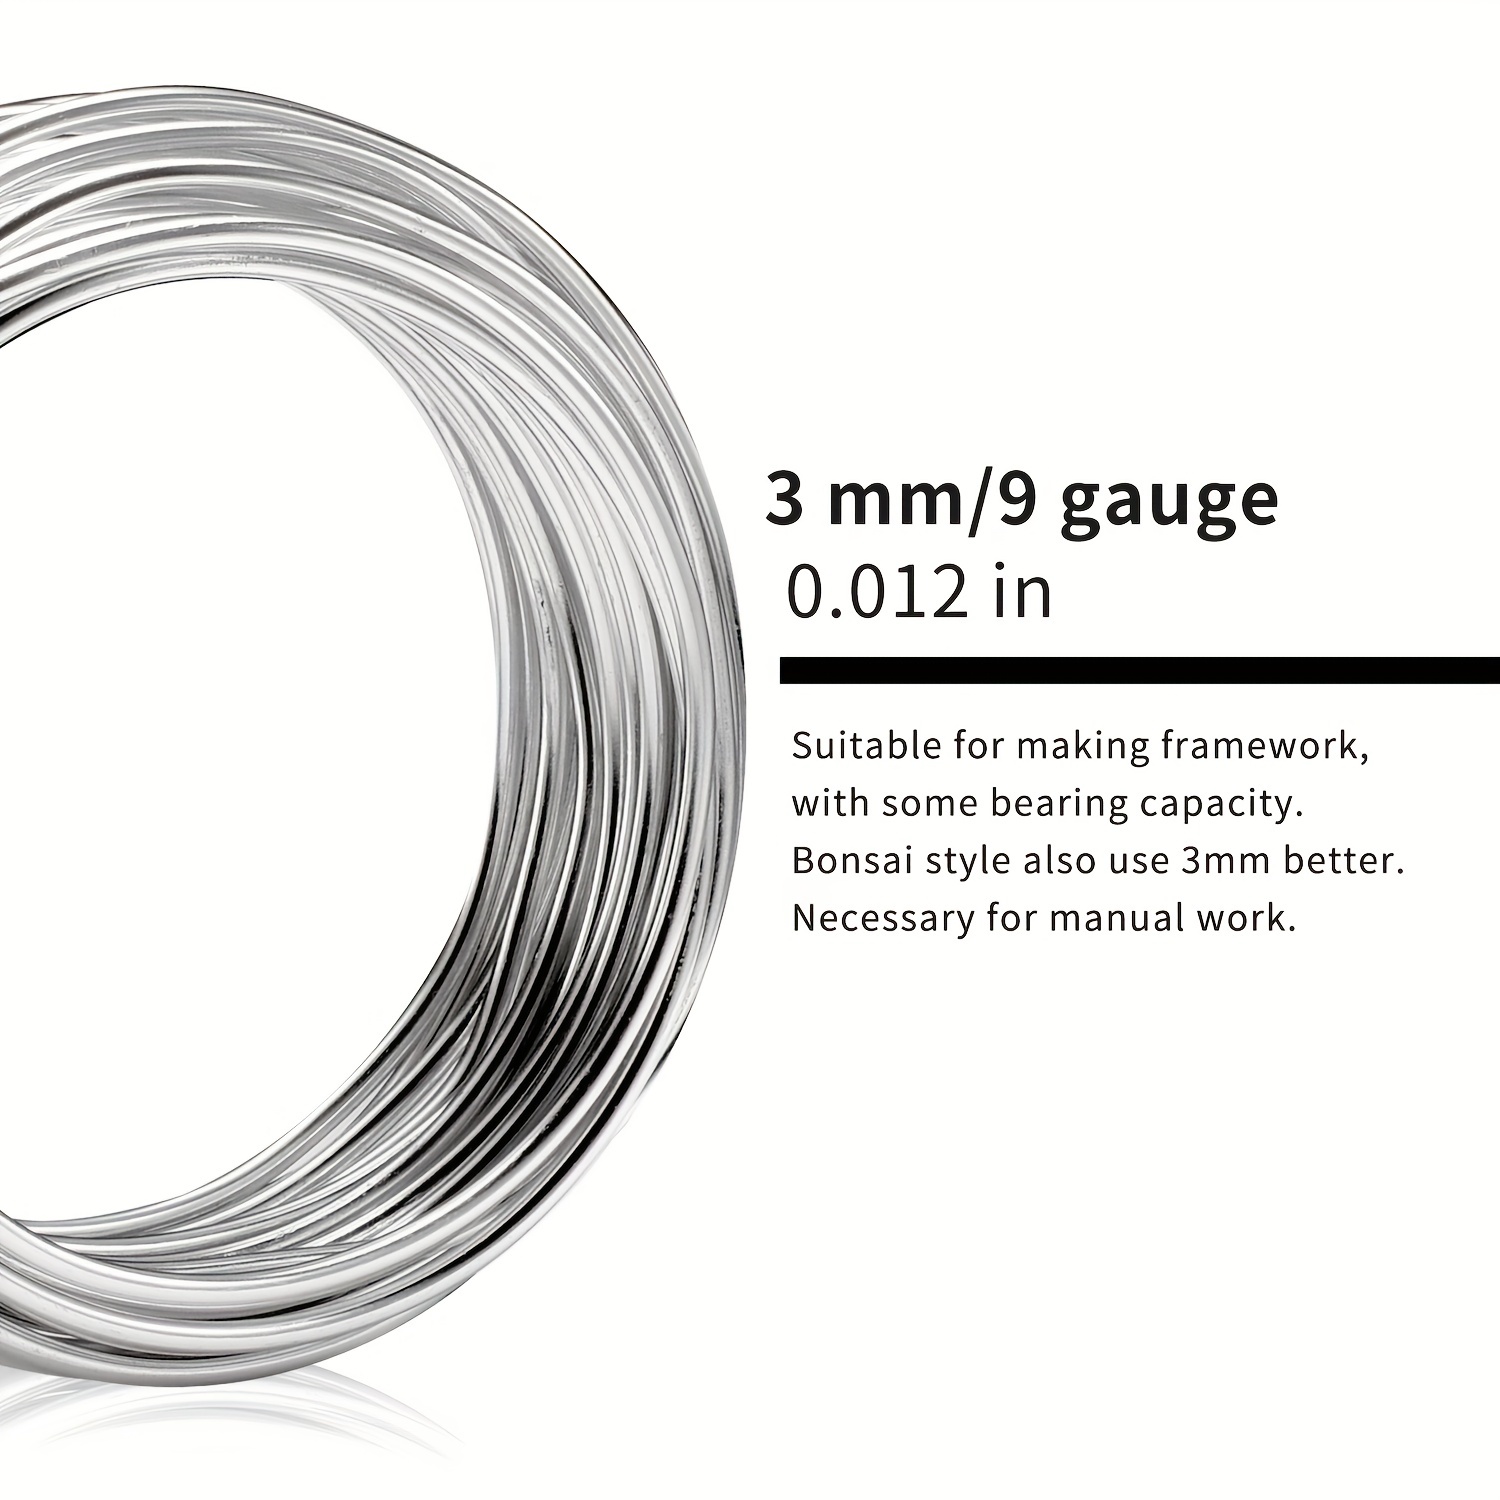 Серебристая алюминиевая проволока 9 калибра — идеально подходит для ювелирных изделий и поделок своими руками — длина 32,8 фута/10 м